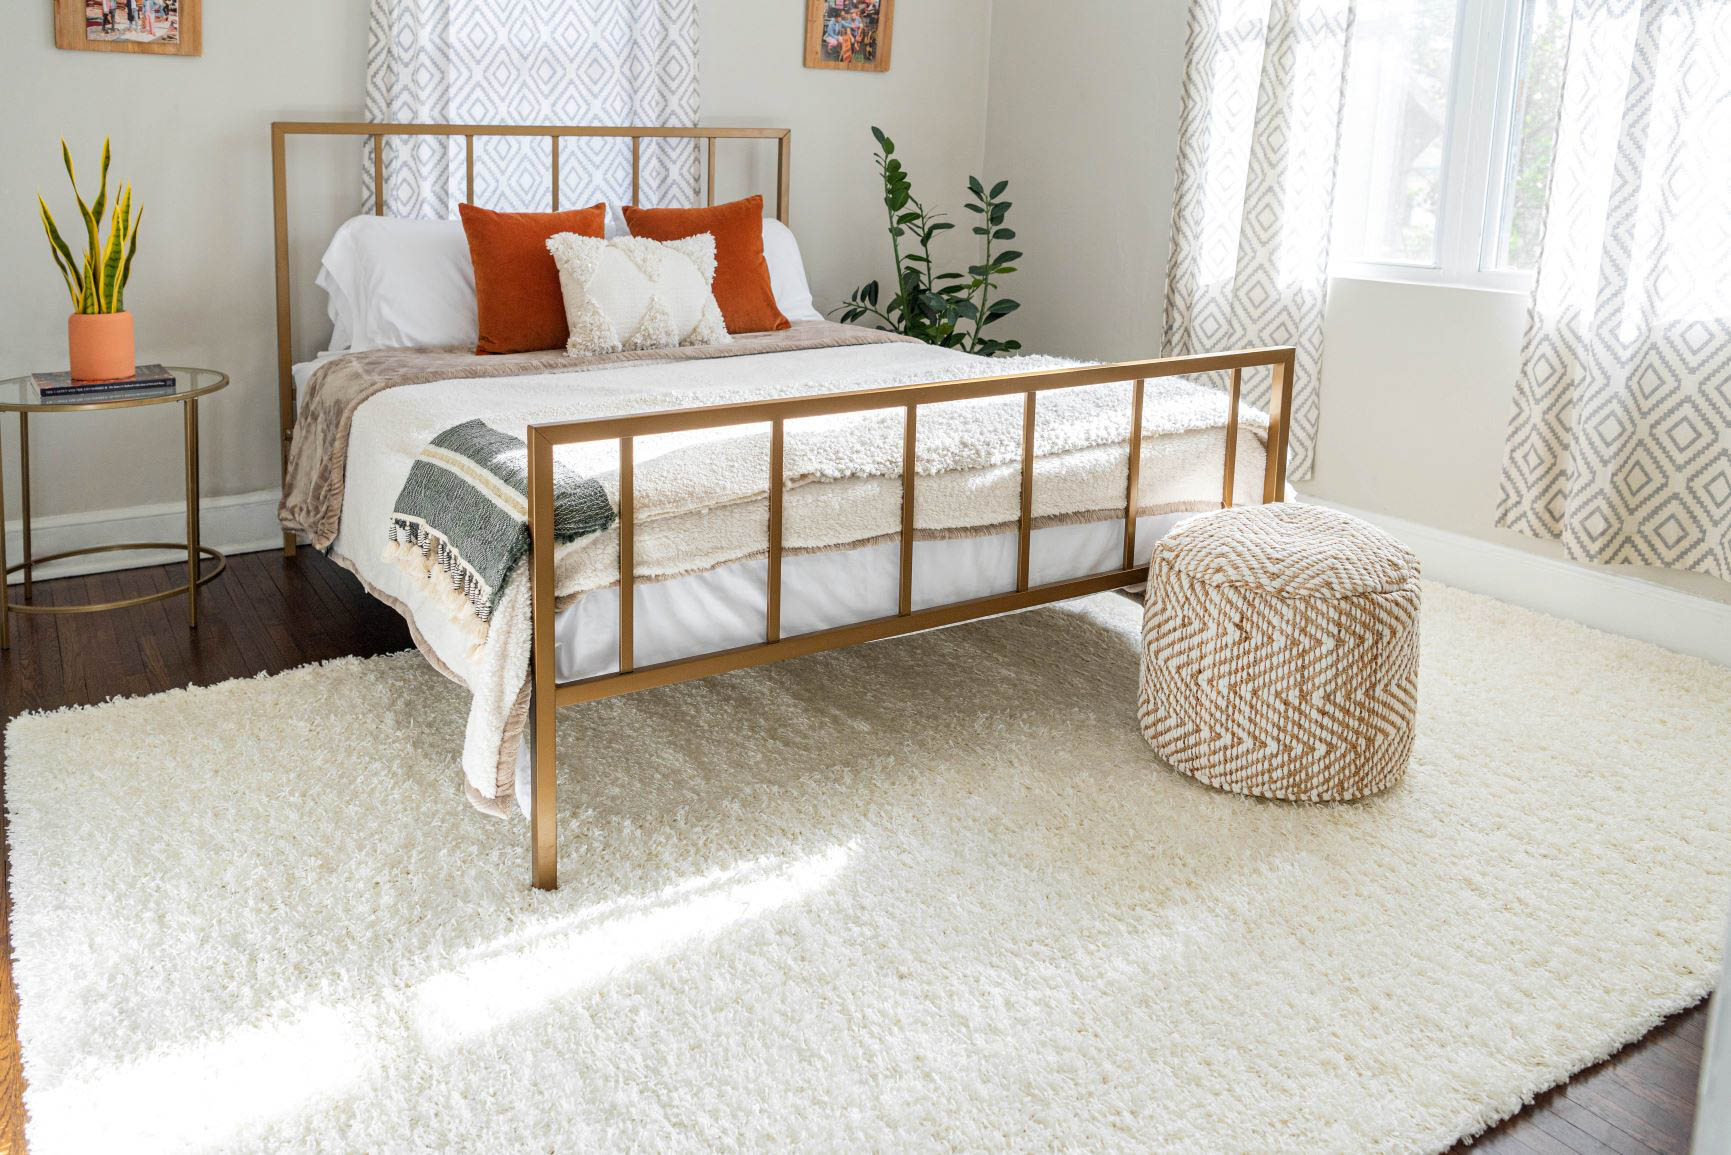 Gợi ý bạn cách chọn thảm trải sàn phòng ngủ phù hợp nhất cho phòng ngủ